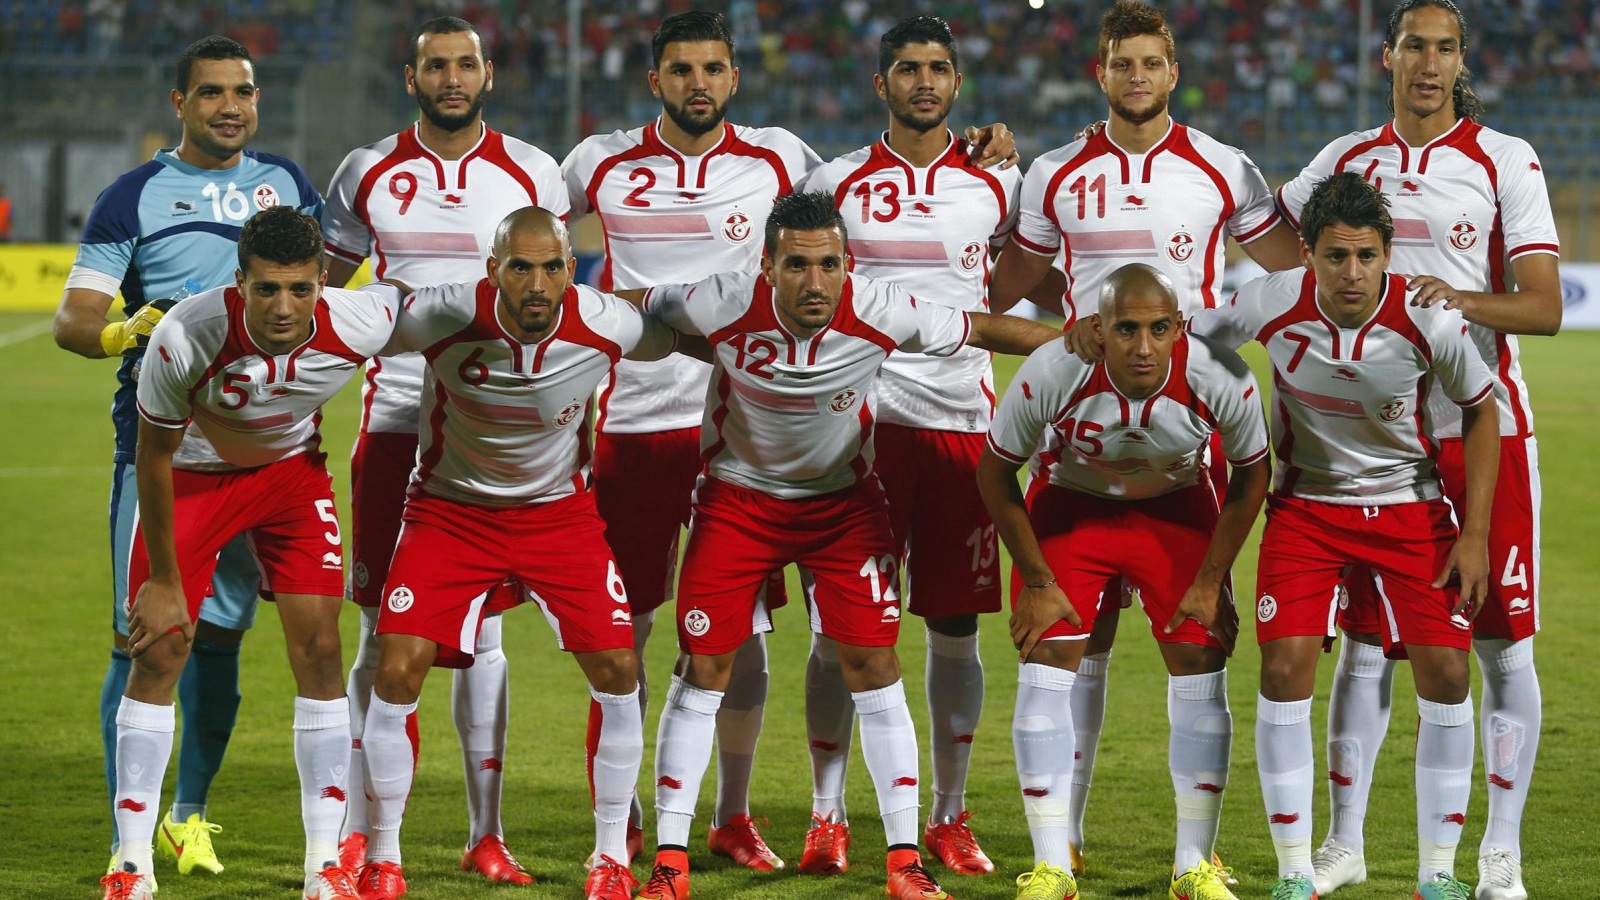 صور منتخب تونس 14 1 صور منتخب تونس خلفيات المنتخب التونسي